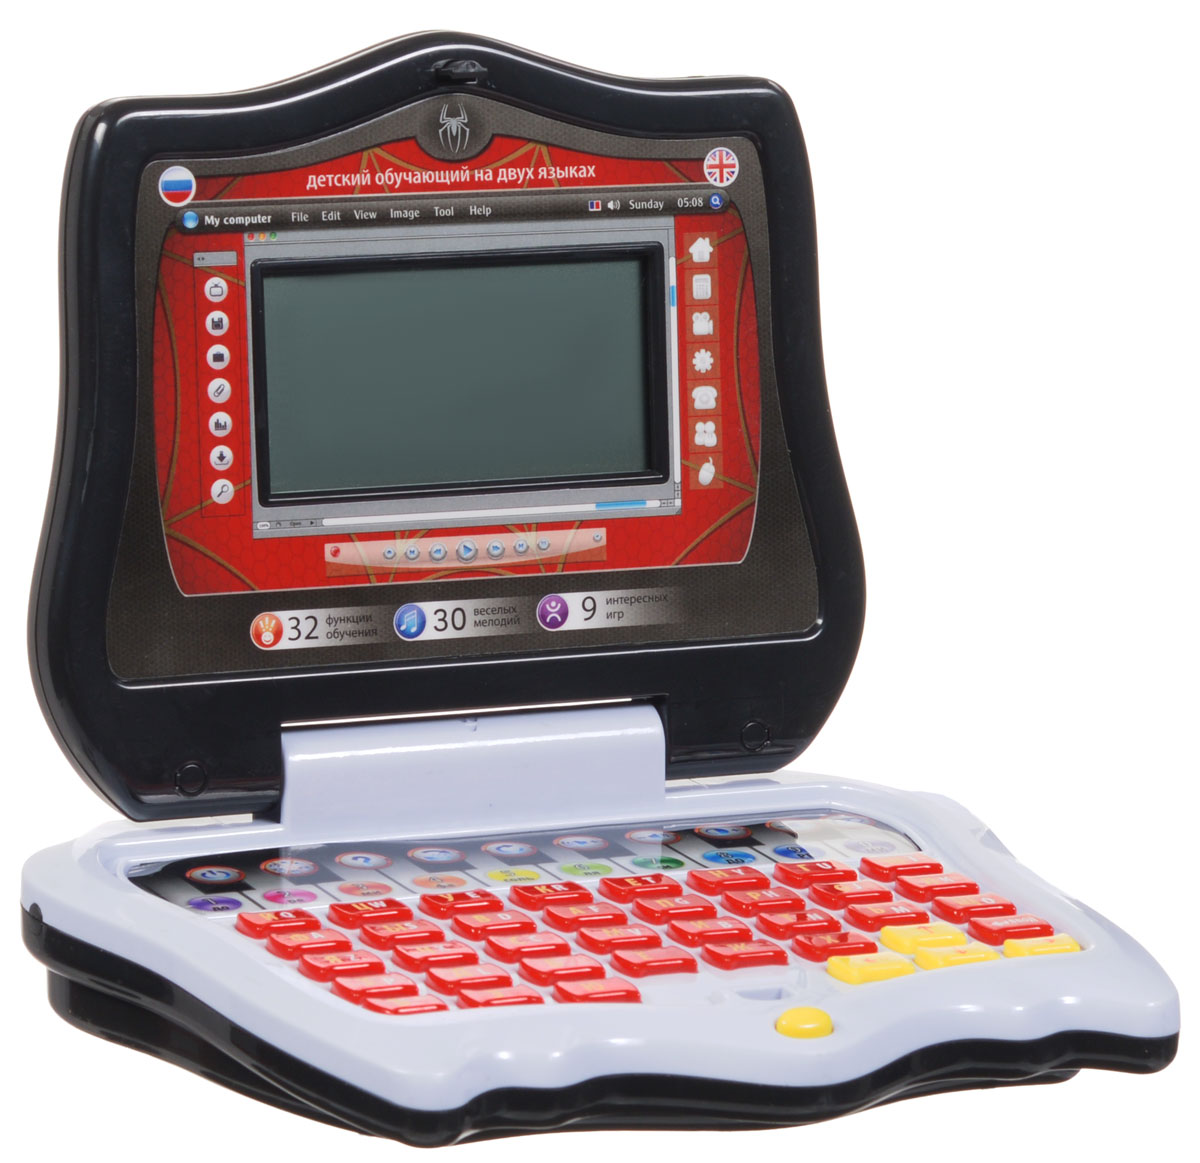 Телефоны электронные и компьютеры. Обучающий компьютер (Joy Toy 7001). Компьютер Joy Toy 7005. Joy Toy электронная игрушка компьютер обучающий. Joy Toy планшетный компьютер 7242.